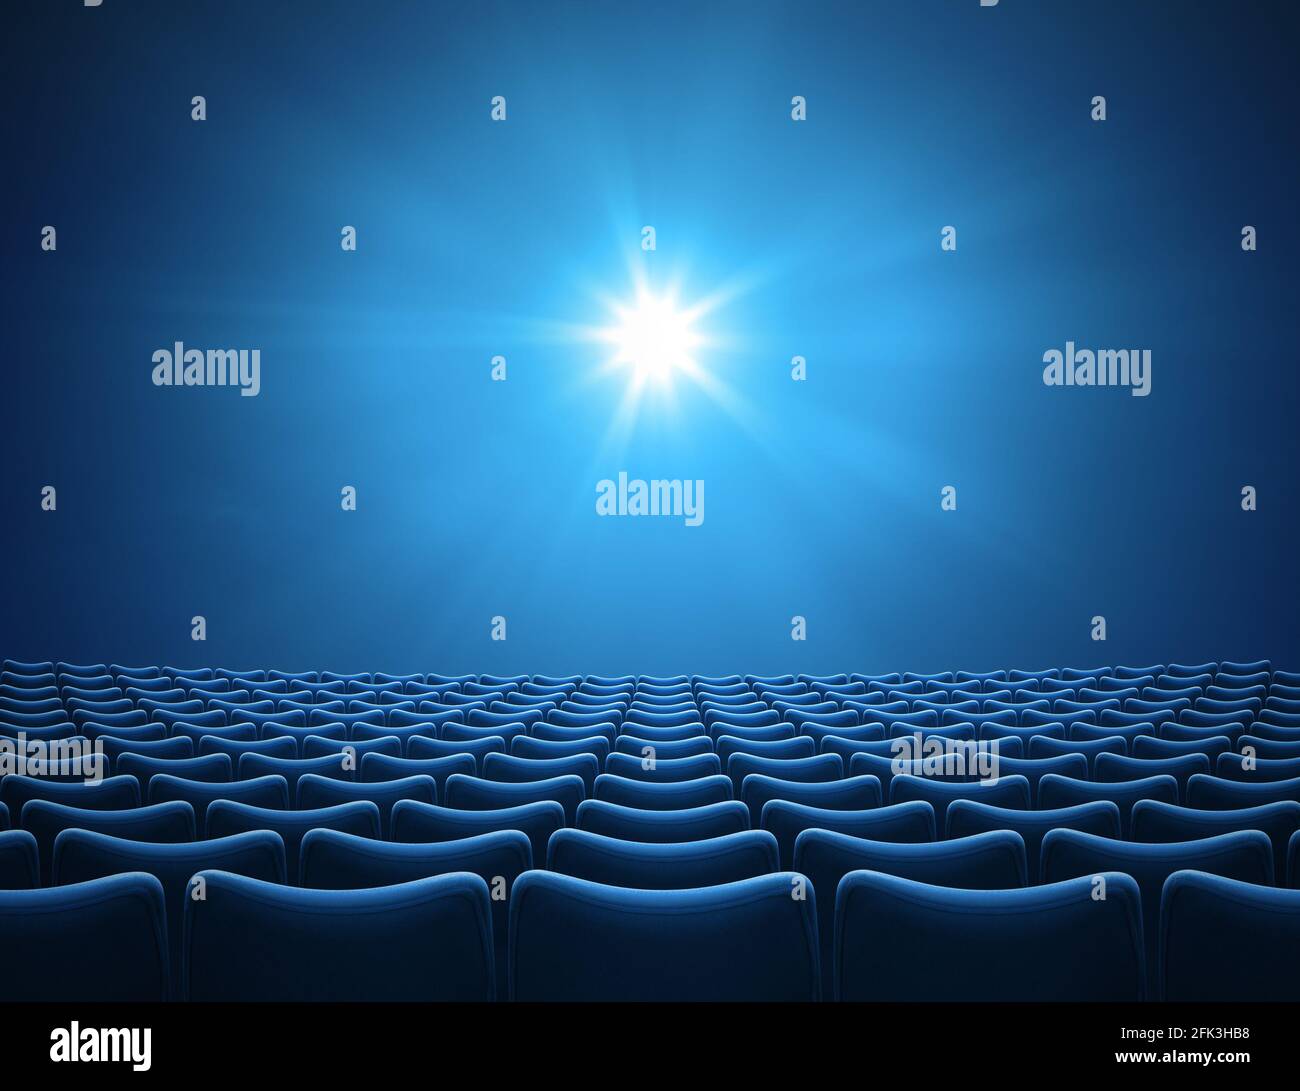 Auditorium blu vuoto con illustrazione 3d a raggi luminosi Foto Stock